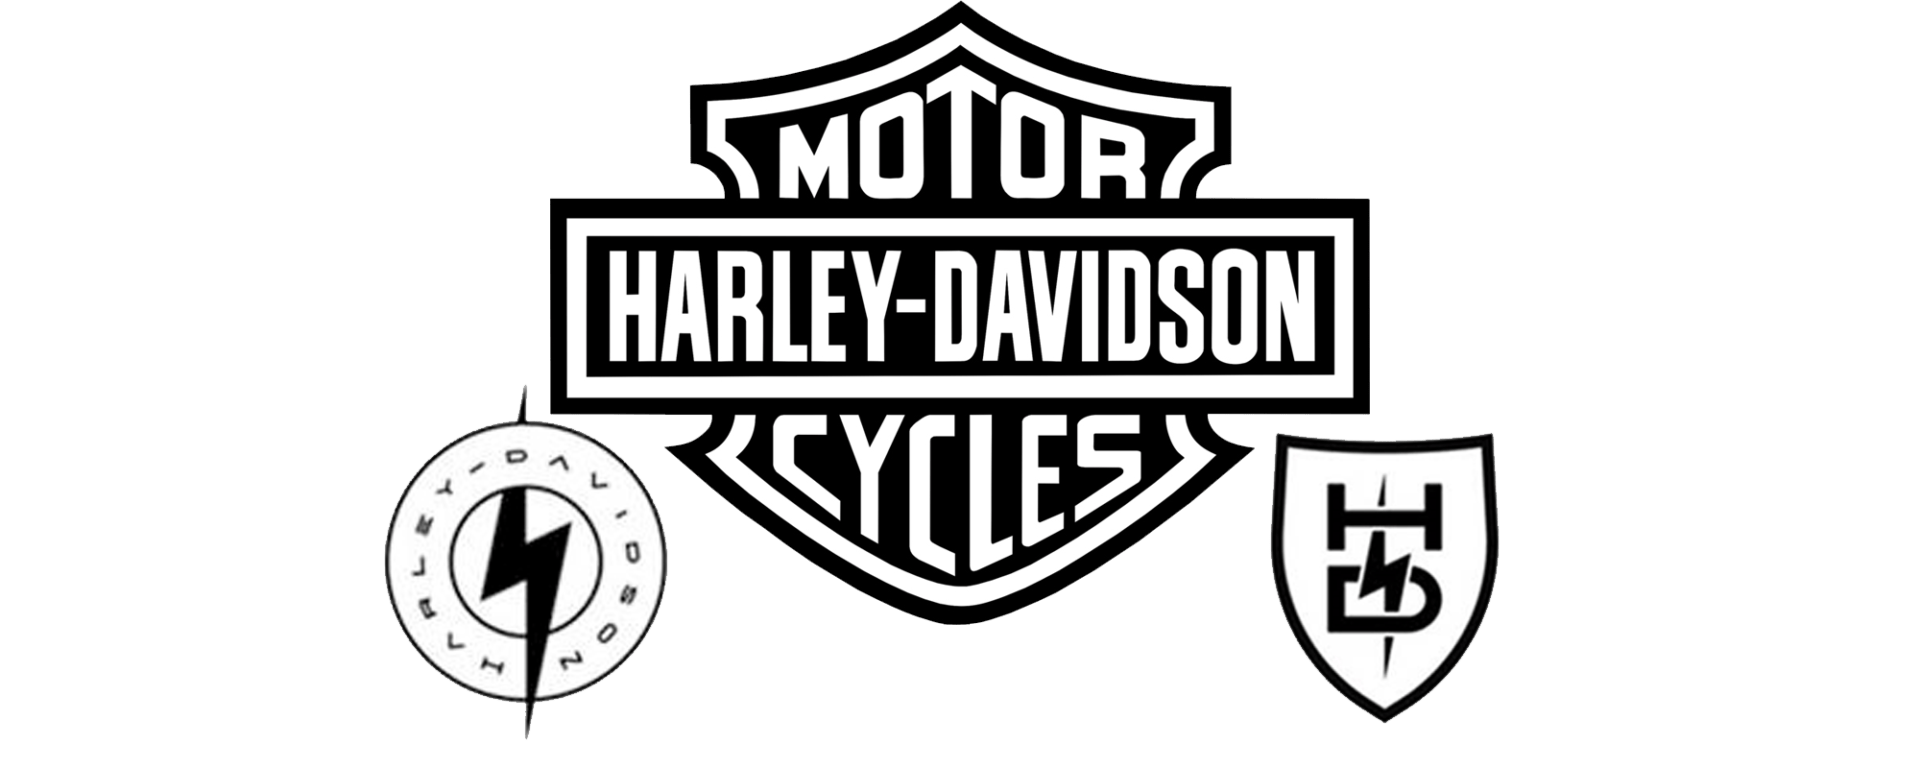 Harley-Davidson könnte sich zur Elektromarke entwickeln